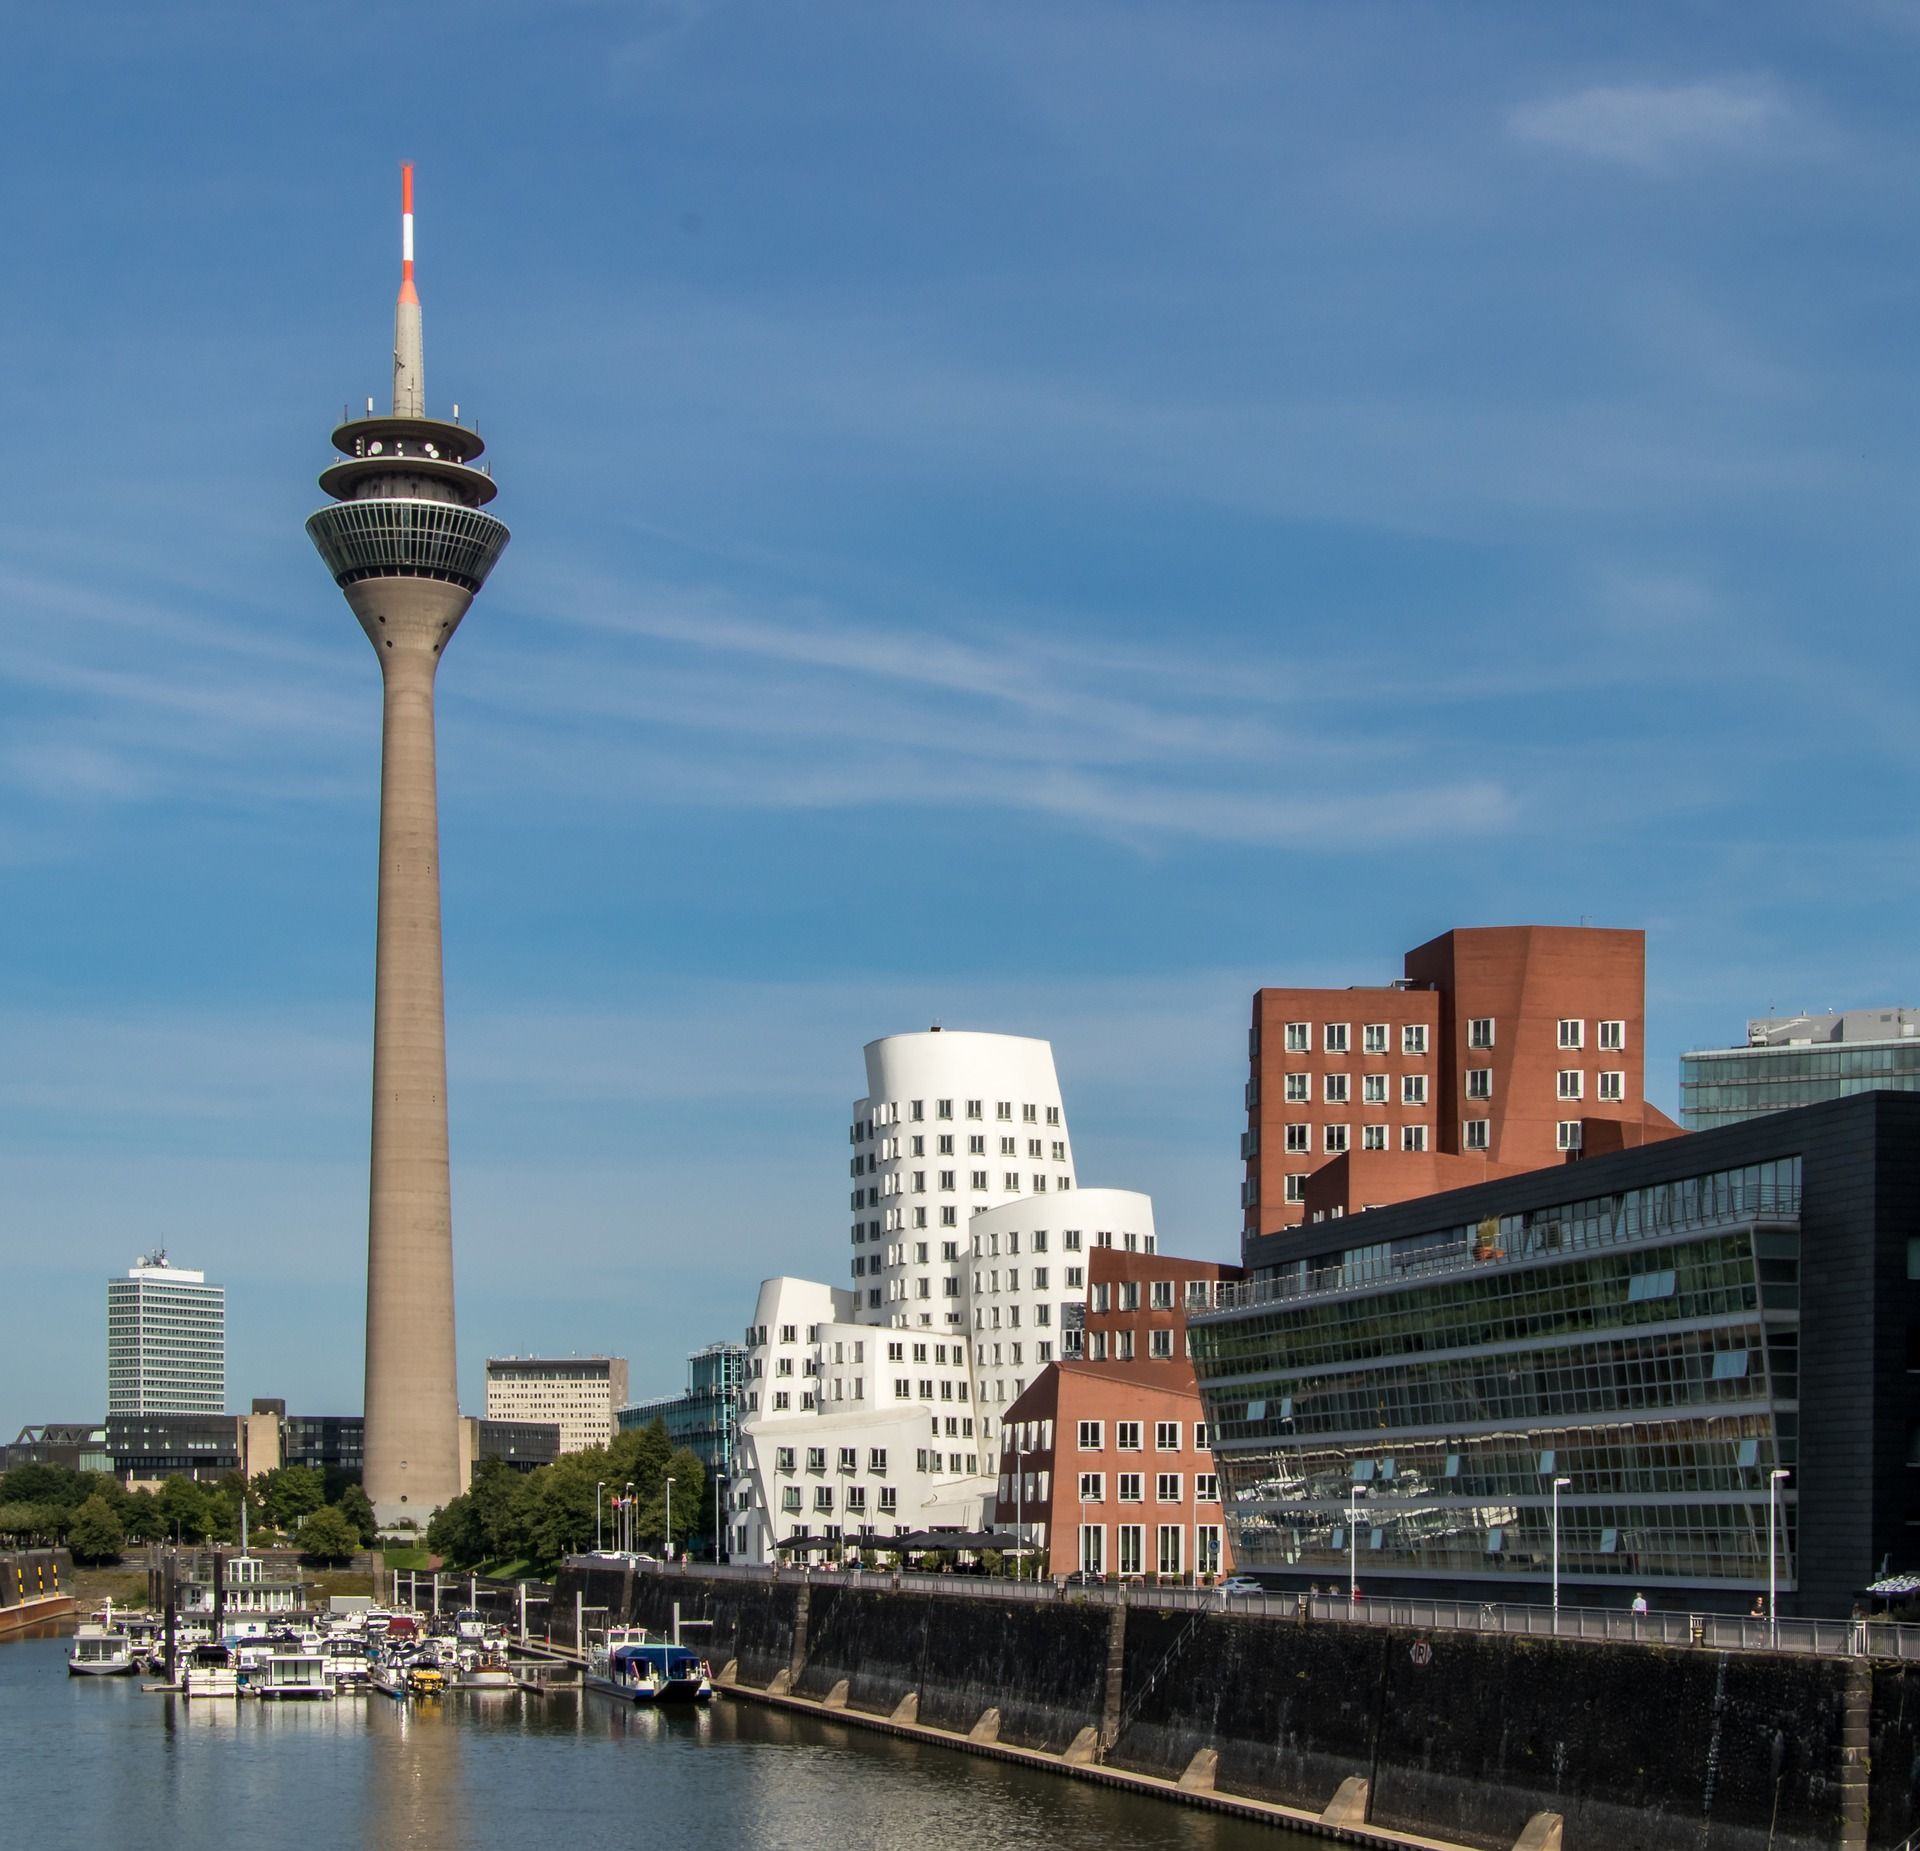 Aussicht auf den Düsseldorfer Medienhafen mit den auffälligen Gehry Bauten und dem Rheinturm im Hintergrund